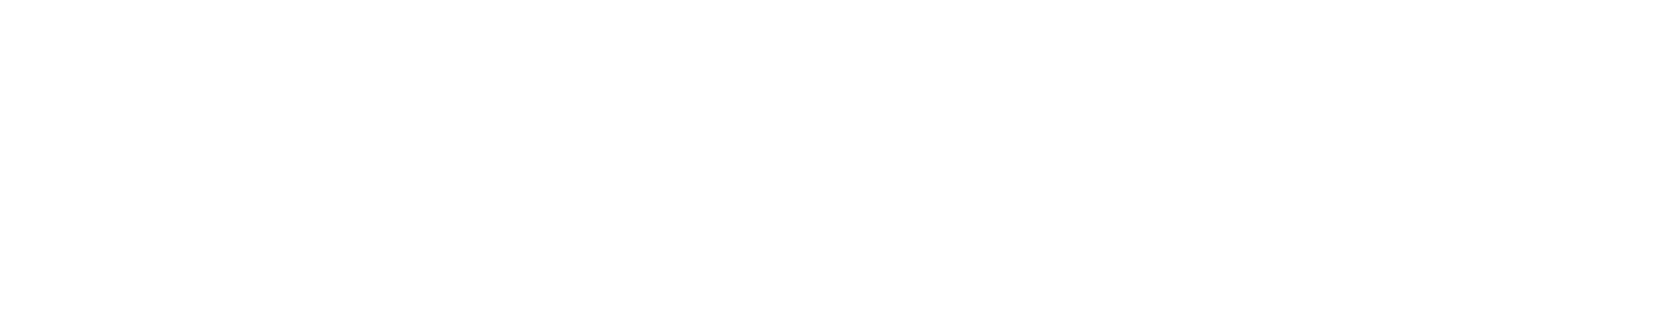 Логотип АНО "ПравоРоботов"